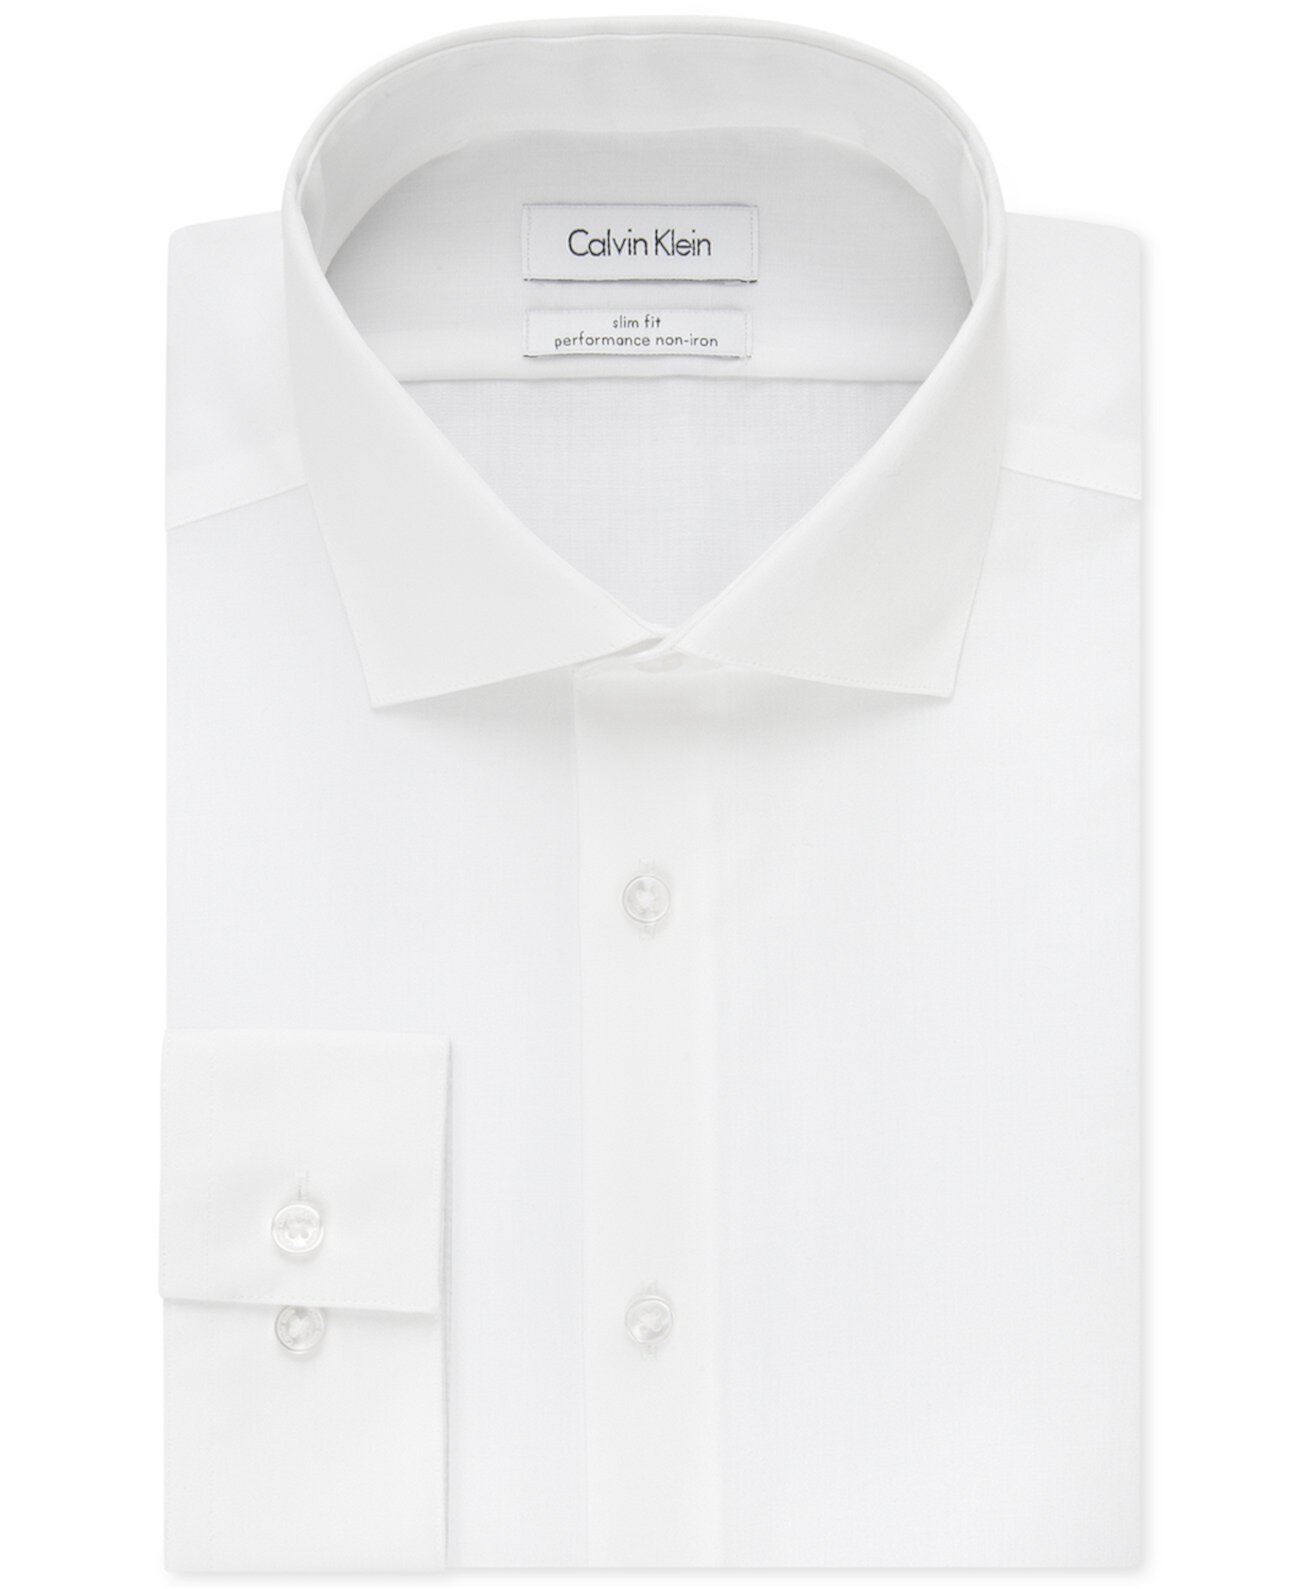 Мужская приталенная классическая рубашка в елочку с открытыми воротниками и без железа Calvin Klein